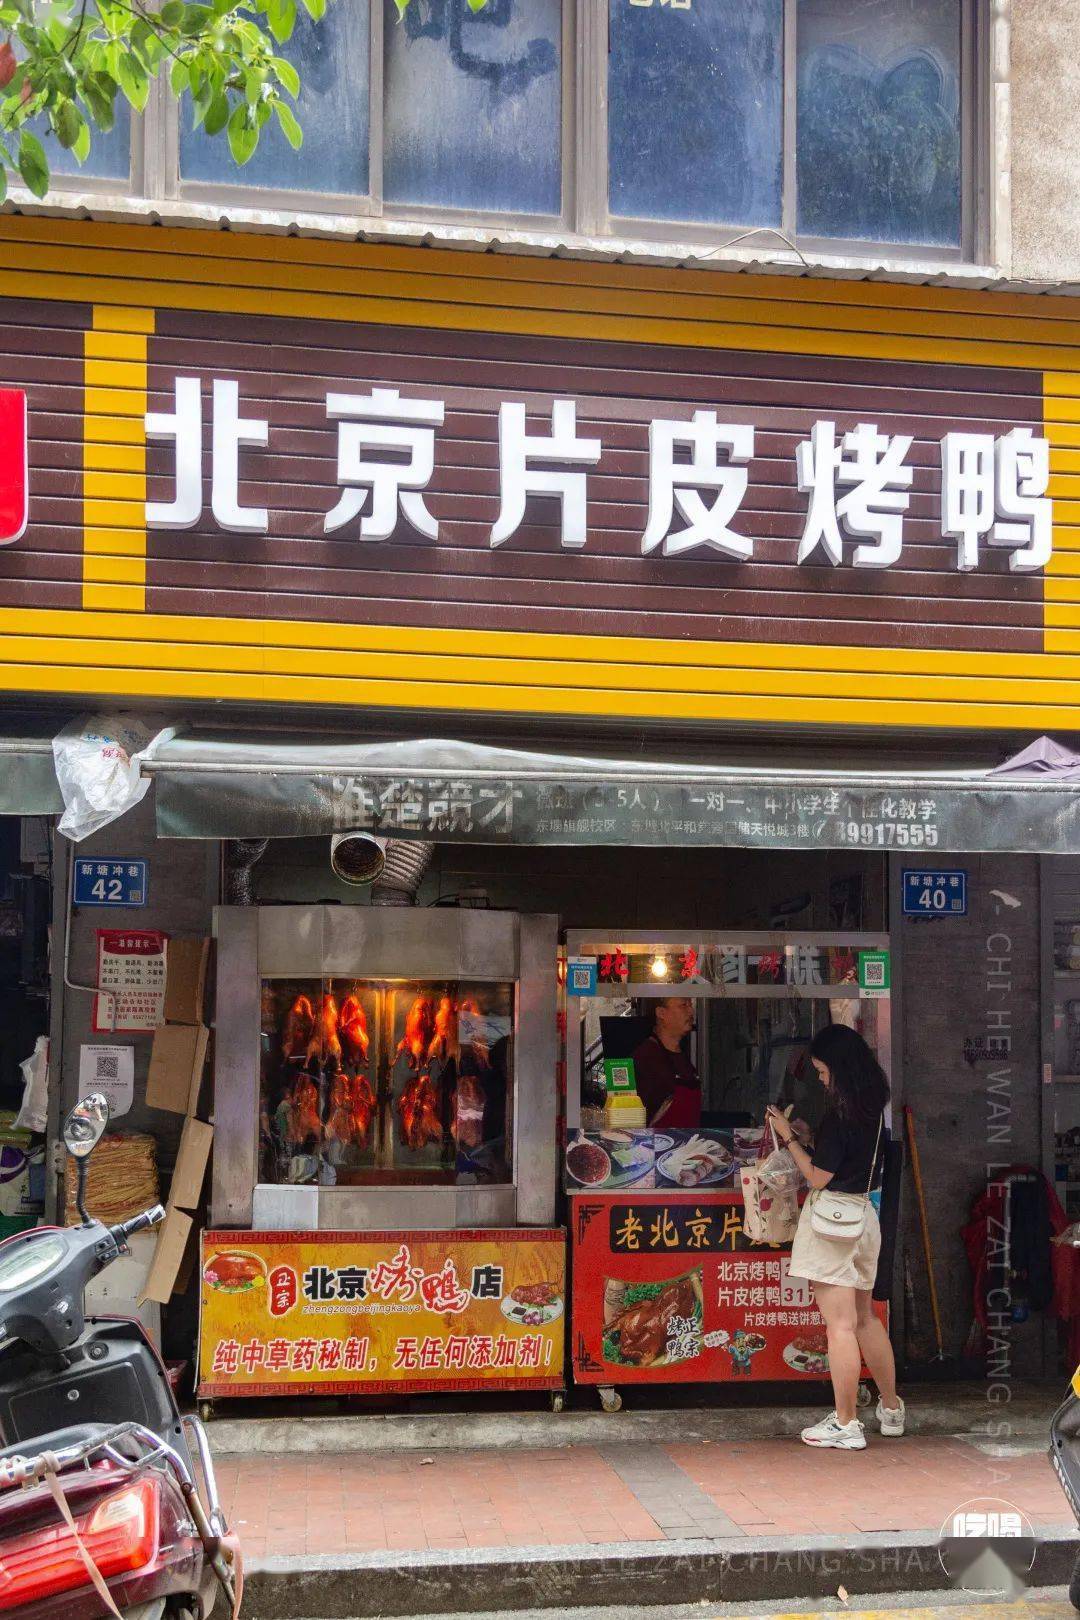 北京片皮烤鸭广告牌图片